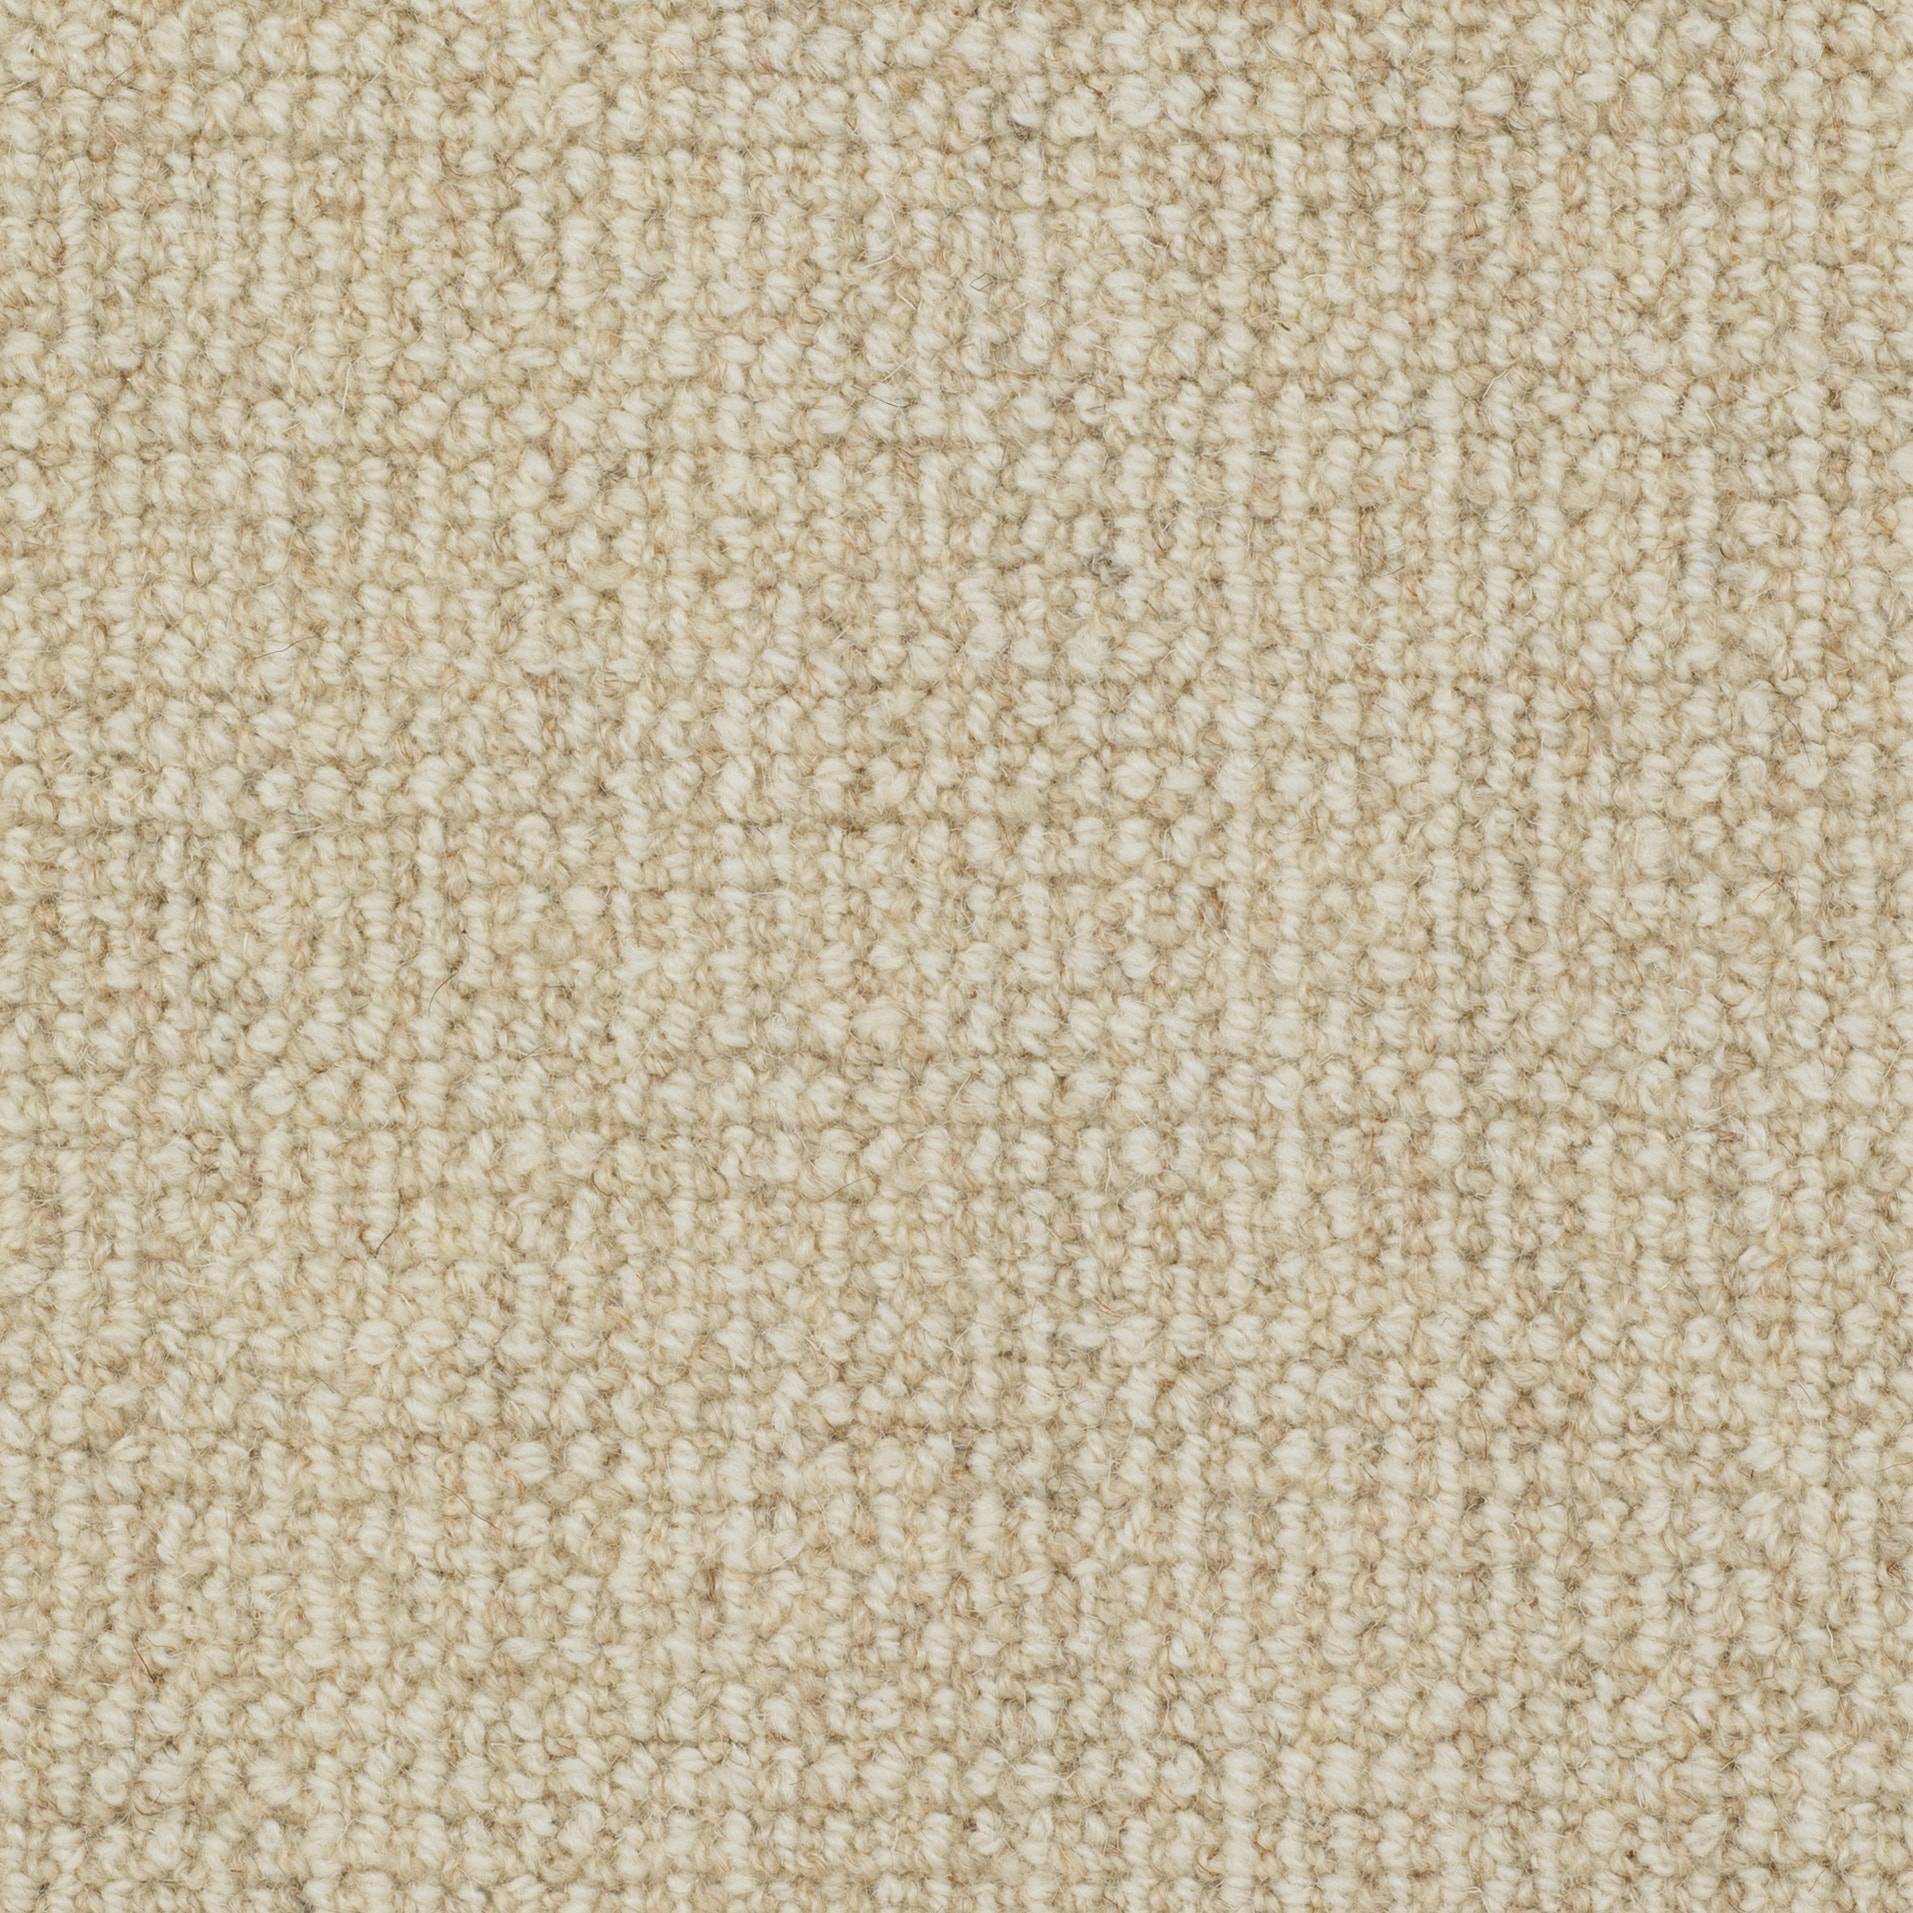 Rustic Croft: Hay Bale - 100% Wool Carpet